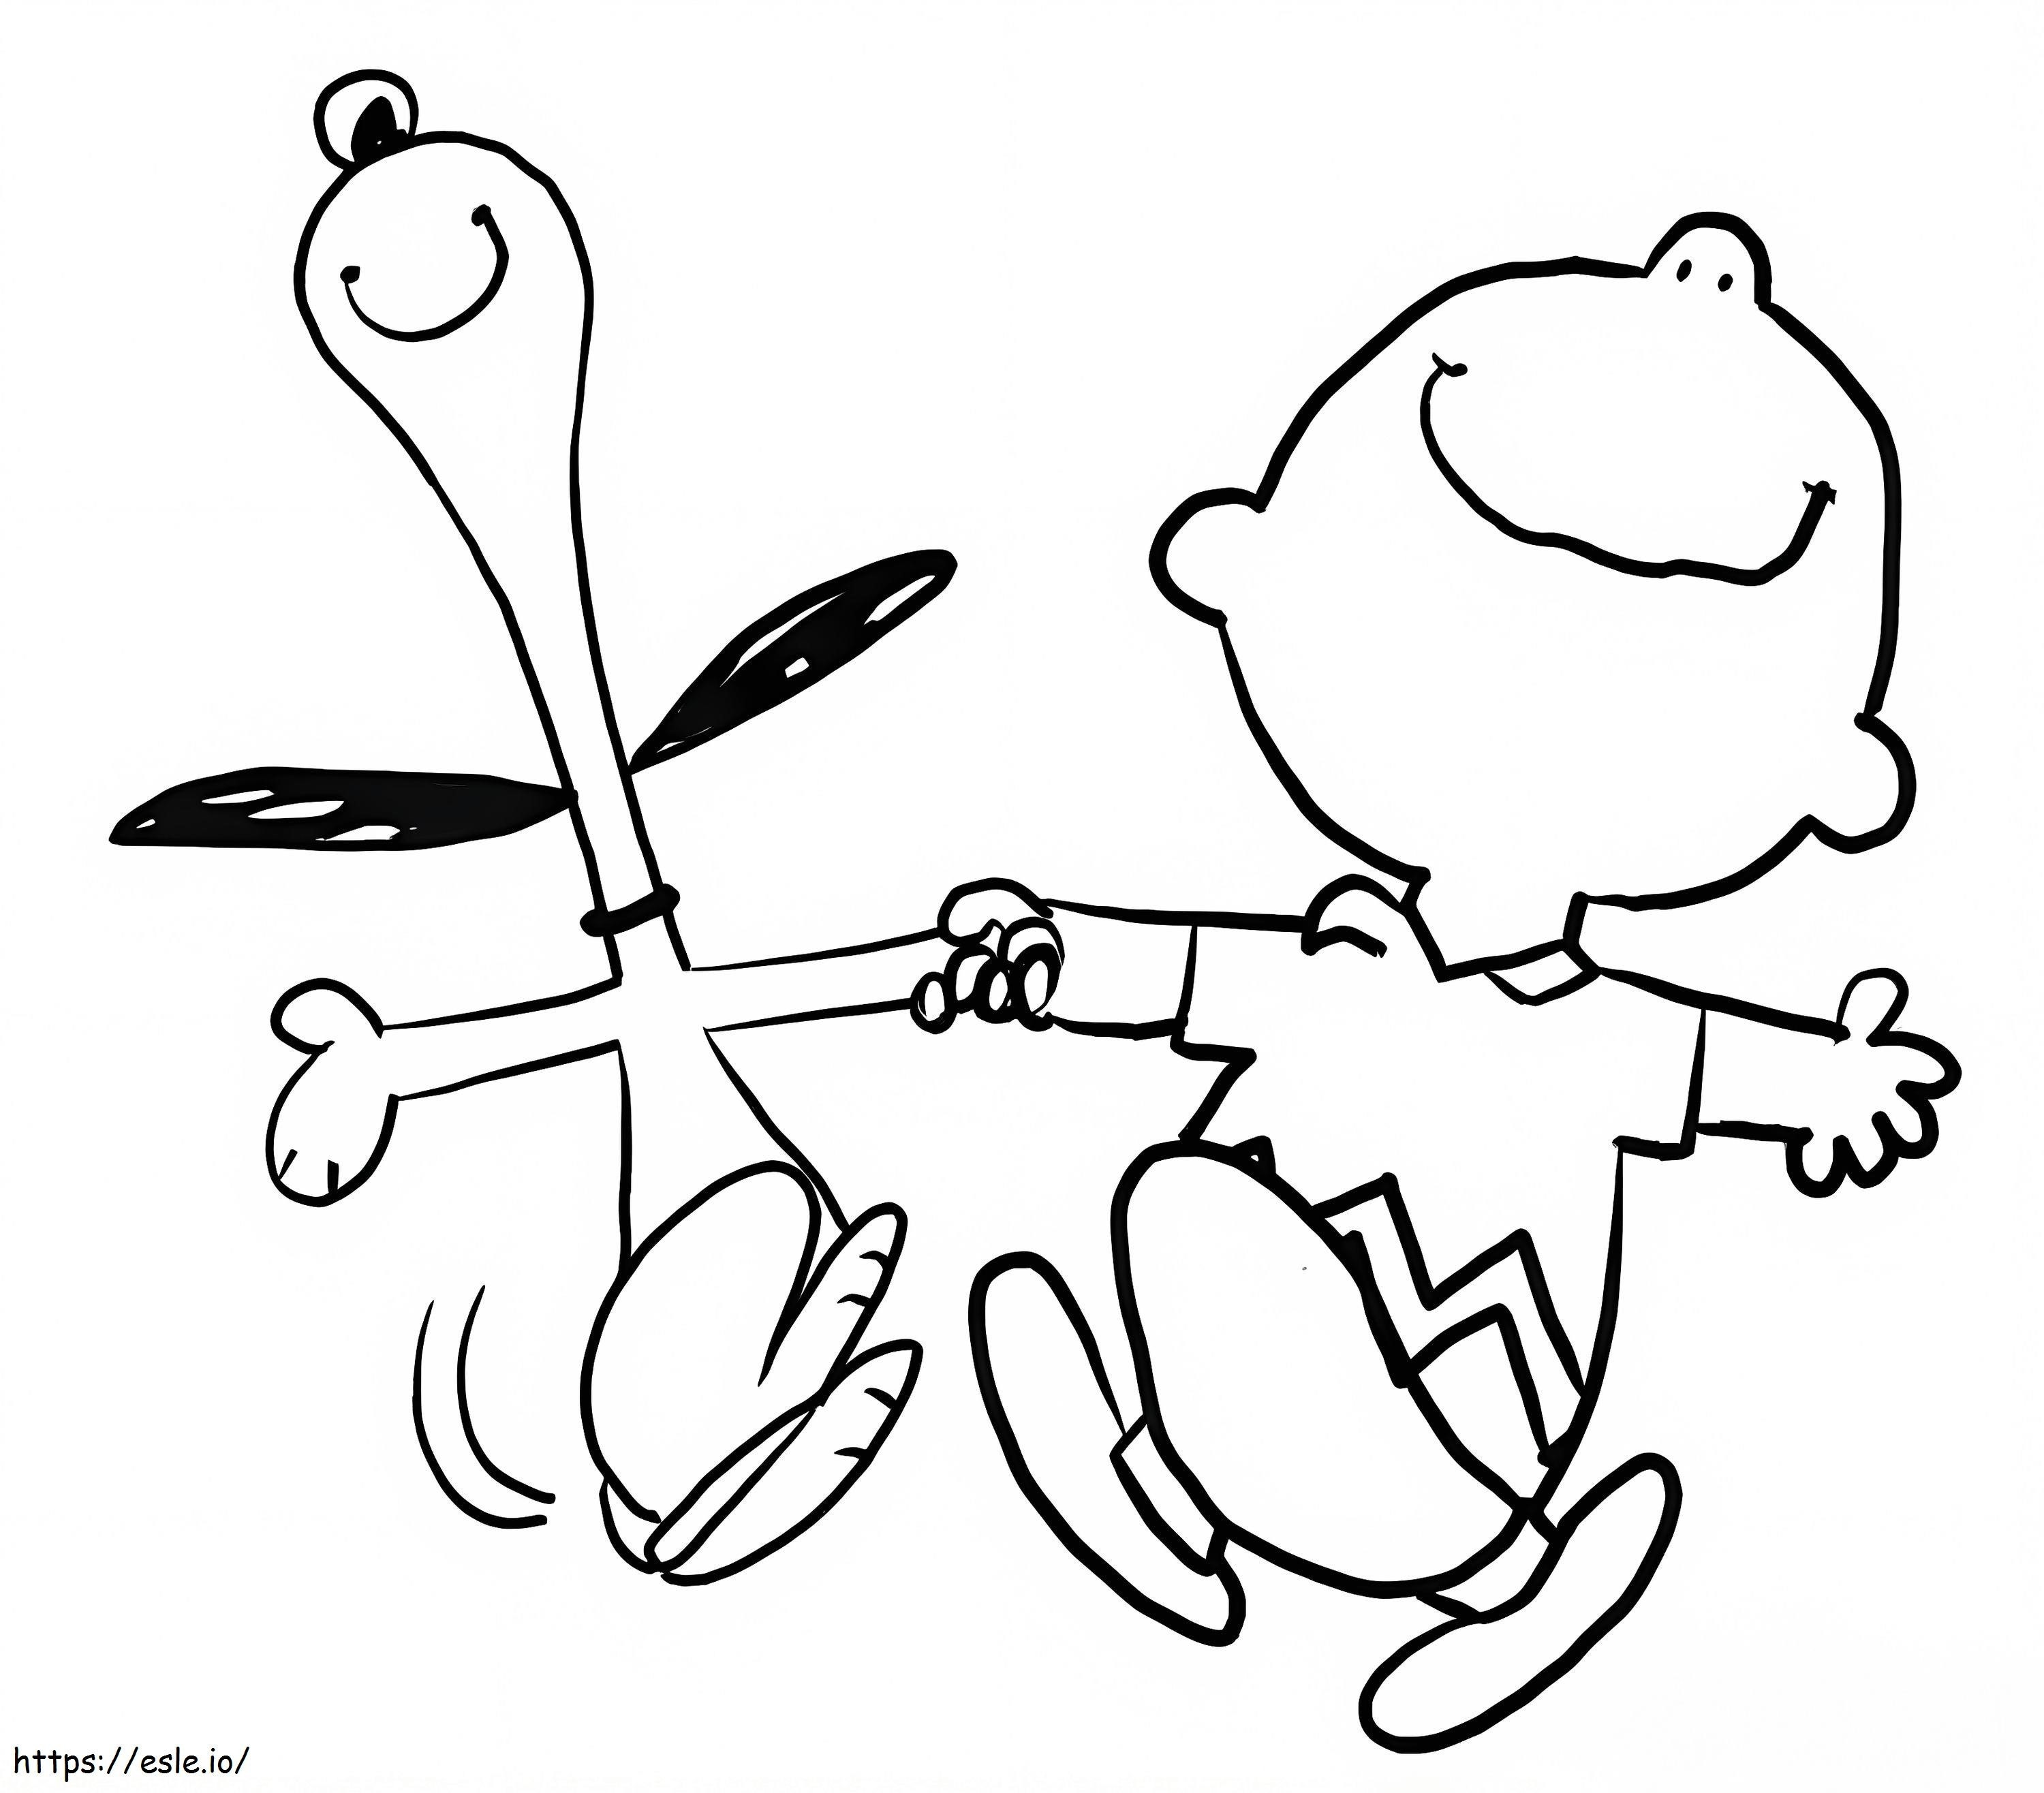 Contento Snoopy en Charlie Brown kleurplaat kleurplaat